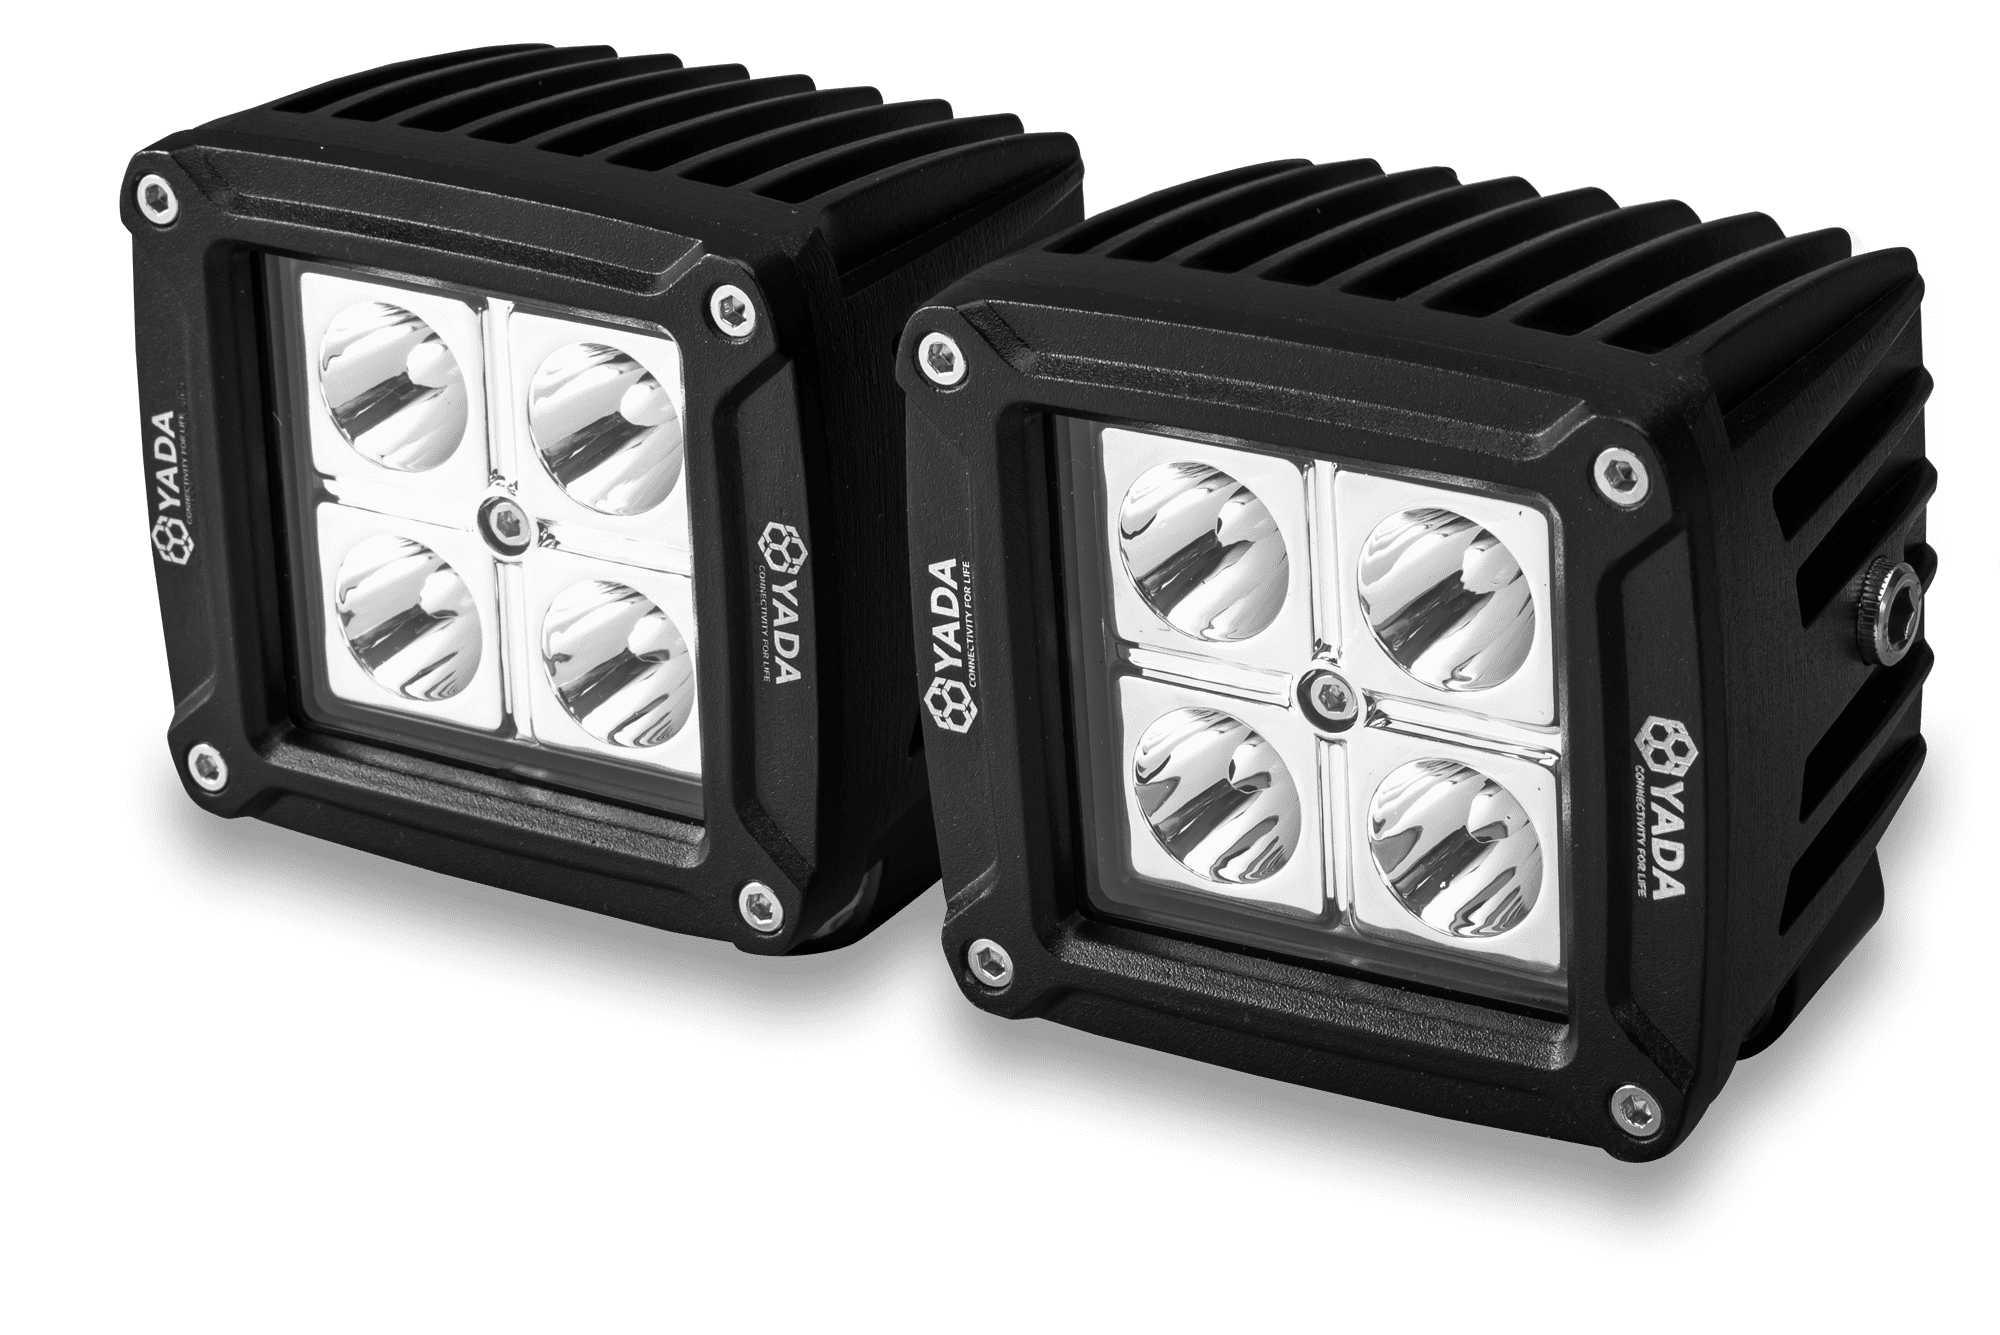 Black Magic LED Cube Kit 2,7 (Flood)